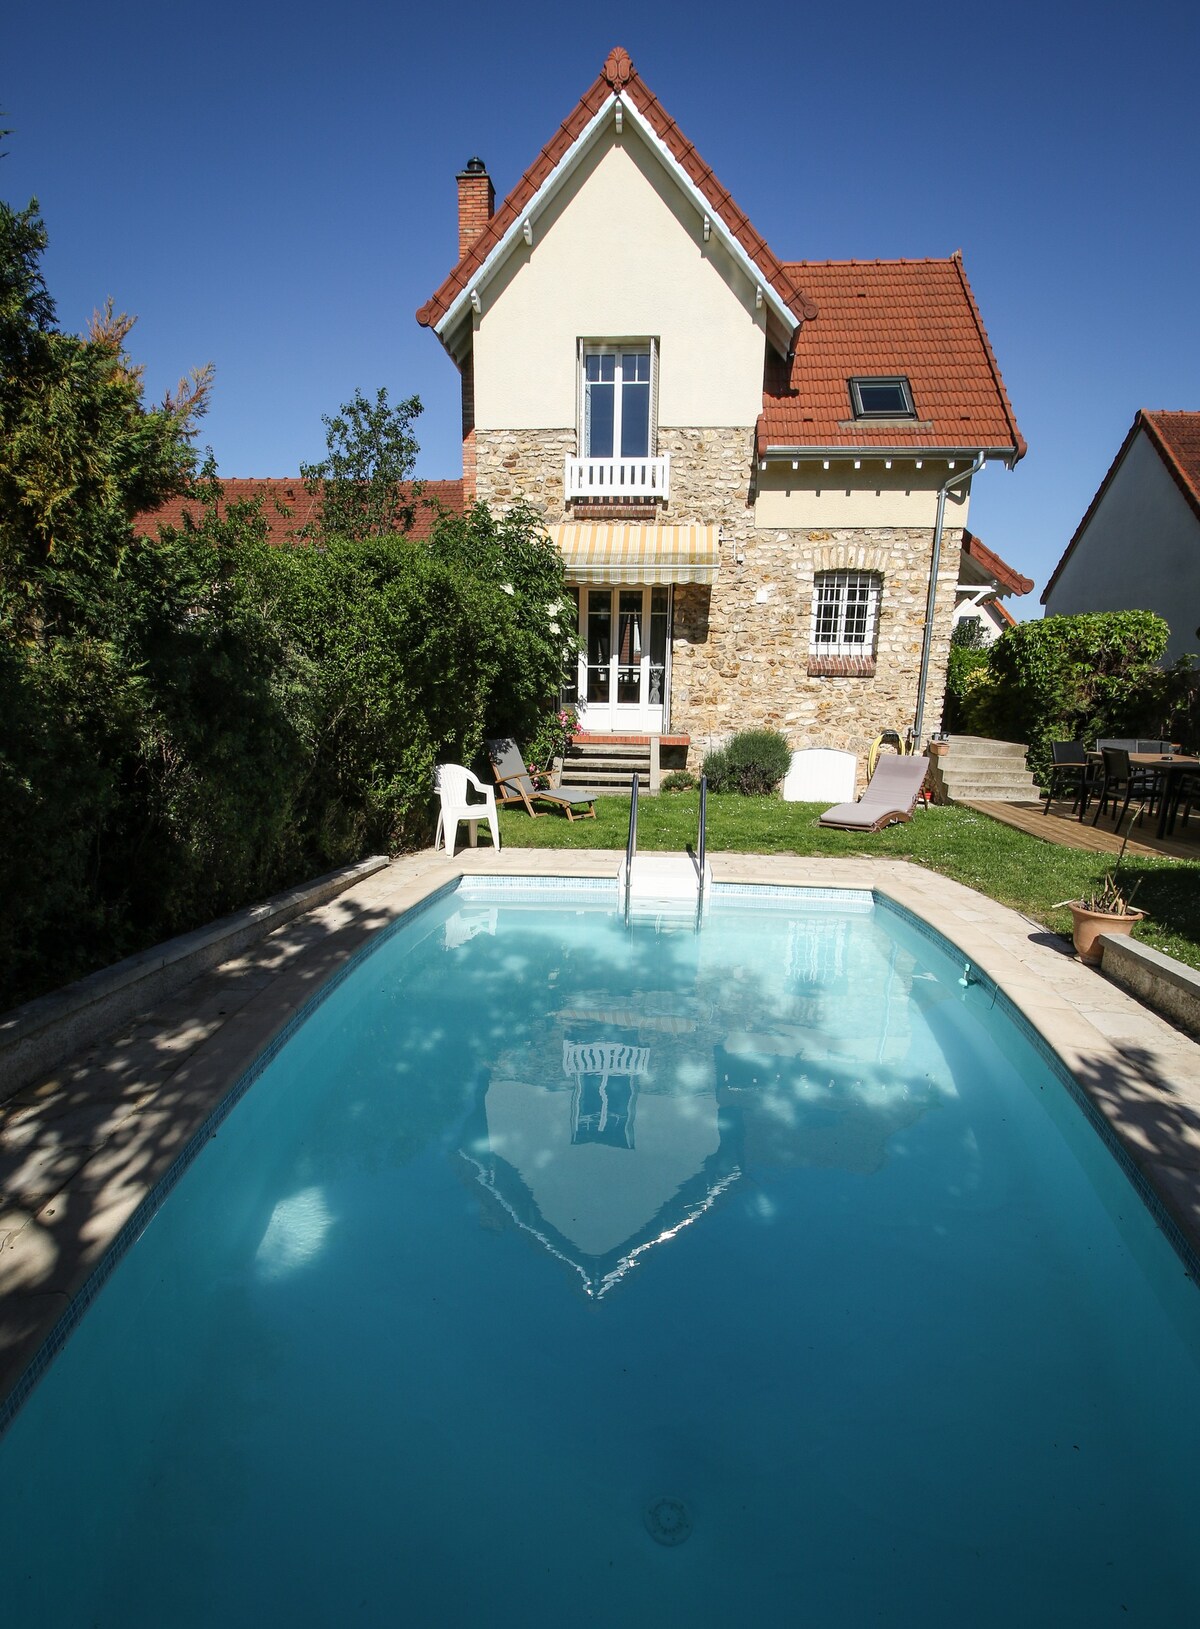 迷人的典型30年代房屋和泳池，距离巴黎20分钟路程